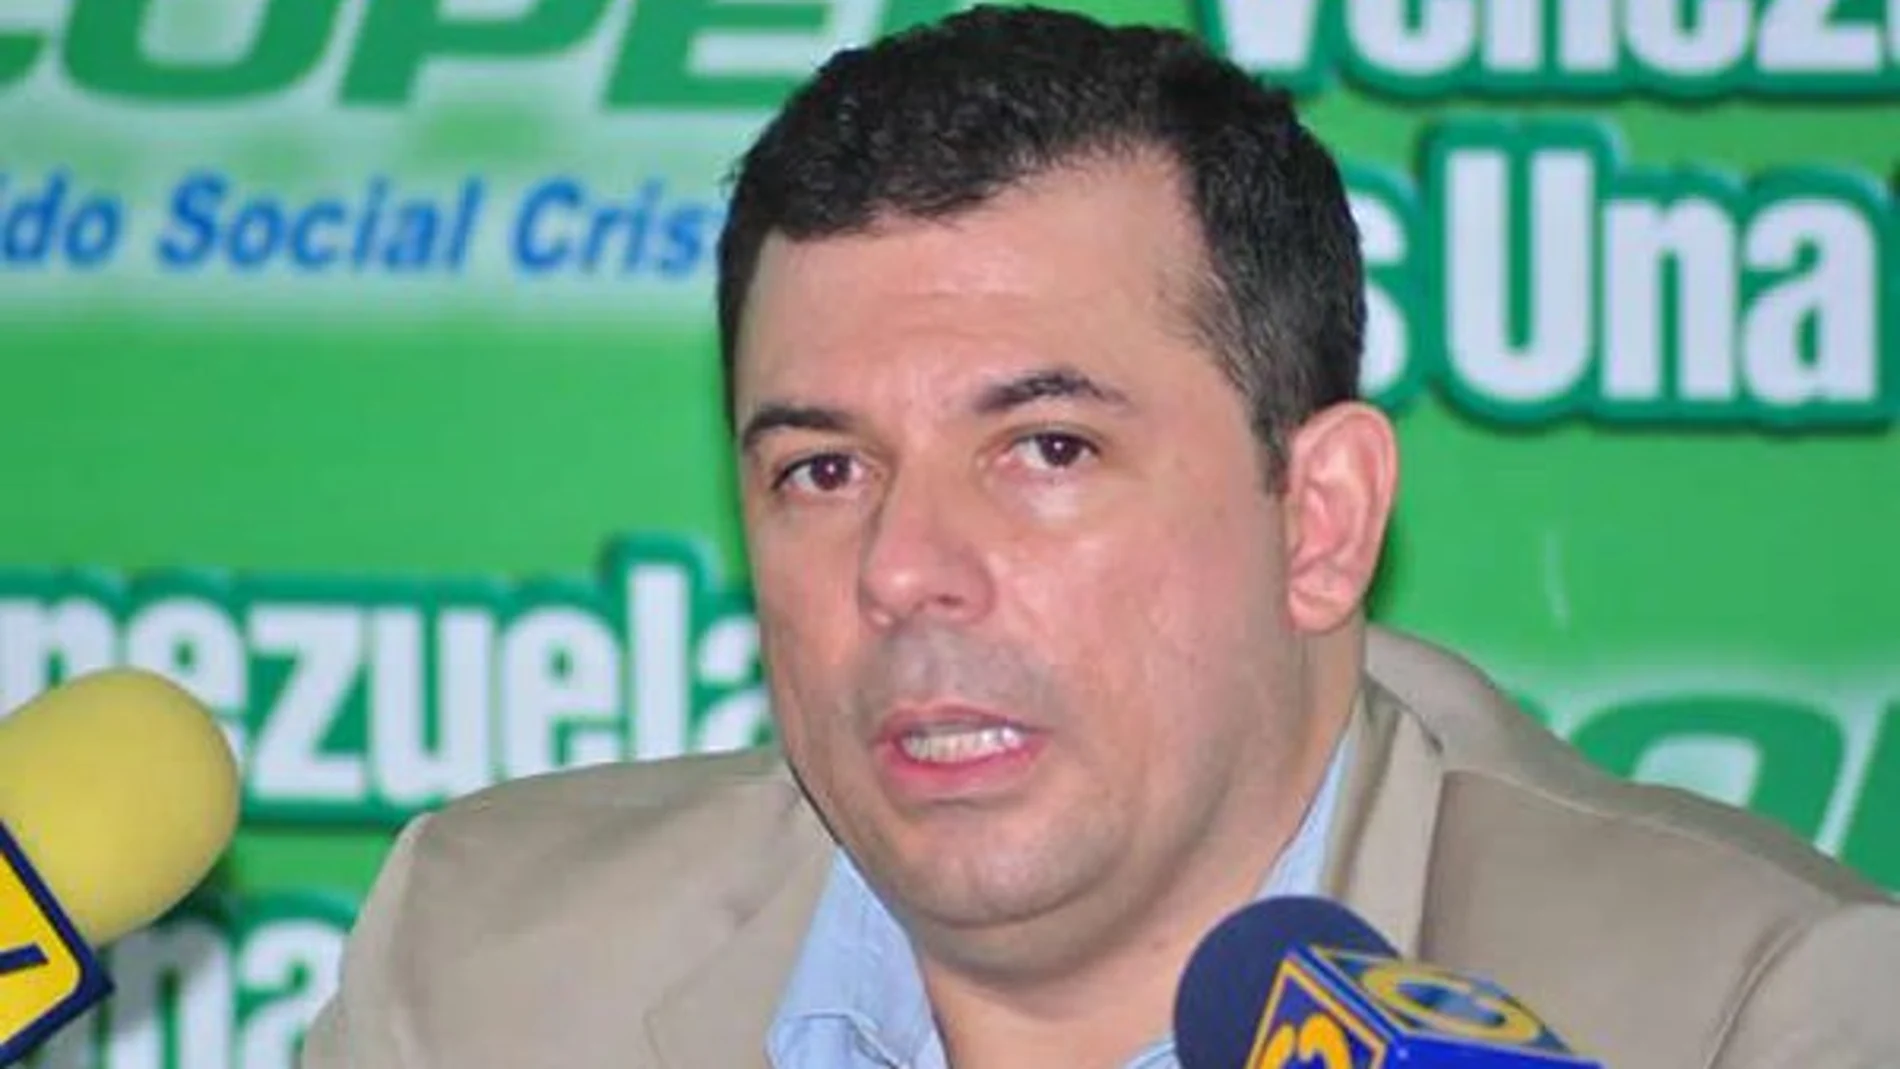 Roberto Enríquez es presidente del Partido Social Cristiano (COPEI) y vicepresidente de la Organización Demócrata Cristiana de América (ODCA)